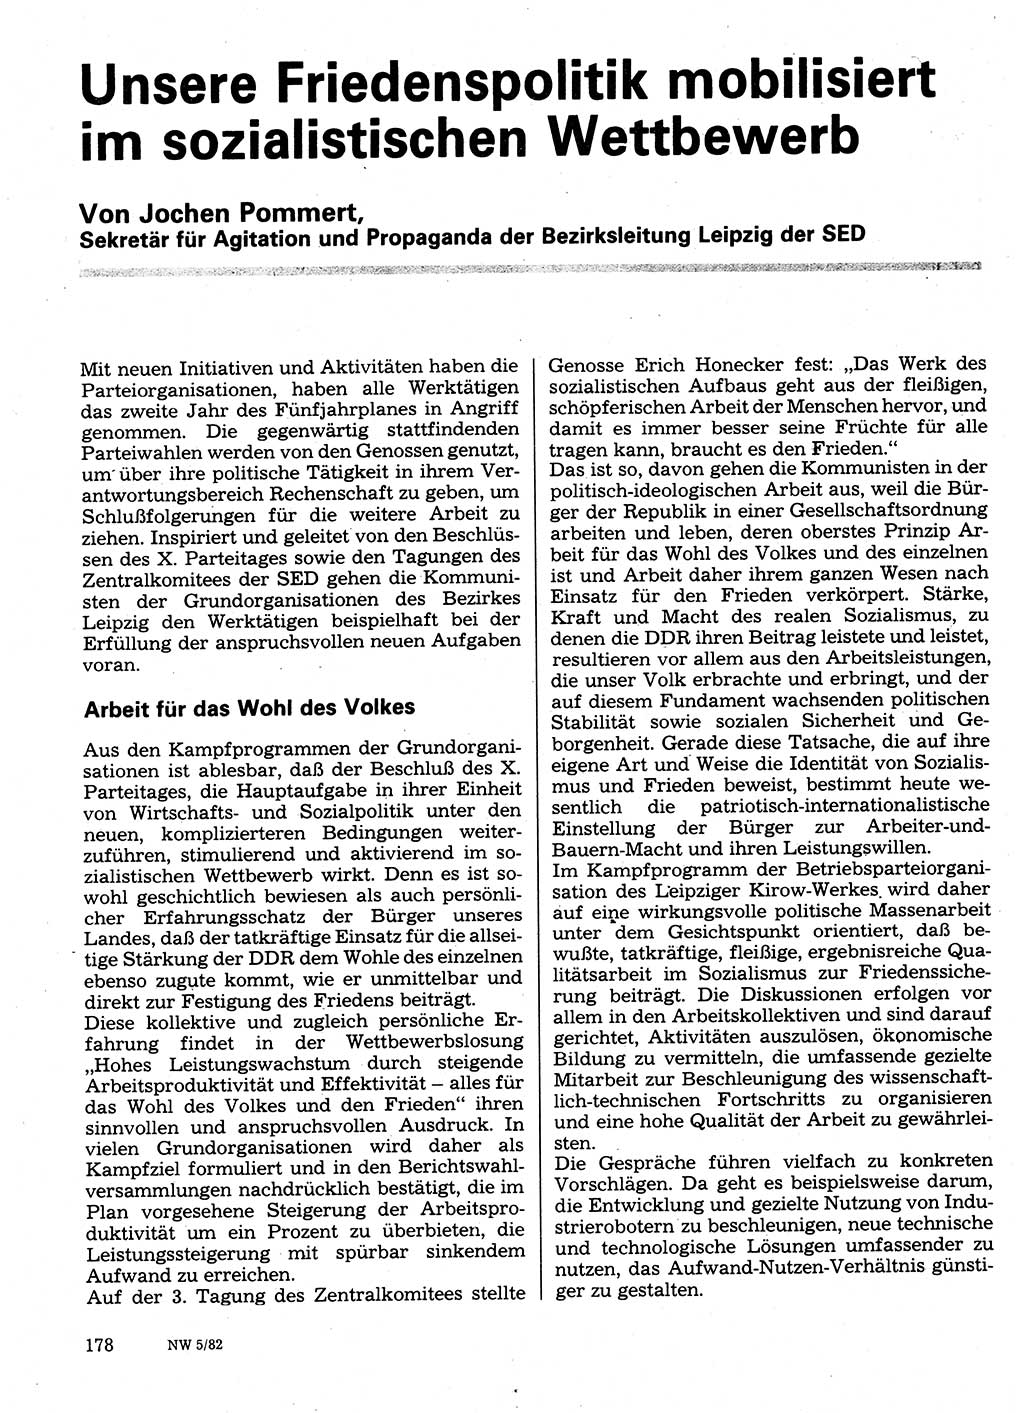 Neuer Weg (NW), Organ des Zentralkomitees (ZK) der SED (Sozialistische Einheitspartei Deutschlands) für Fragen des Parteilebens, 37. Jahrgang [Deutsche Demokratische Republik (DDR)] 1982, Seite 178 (NW ZK SED DDR 1982, S. 178)